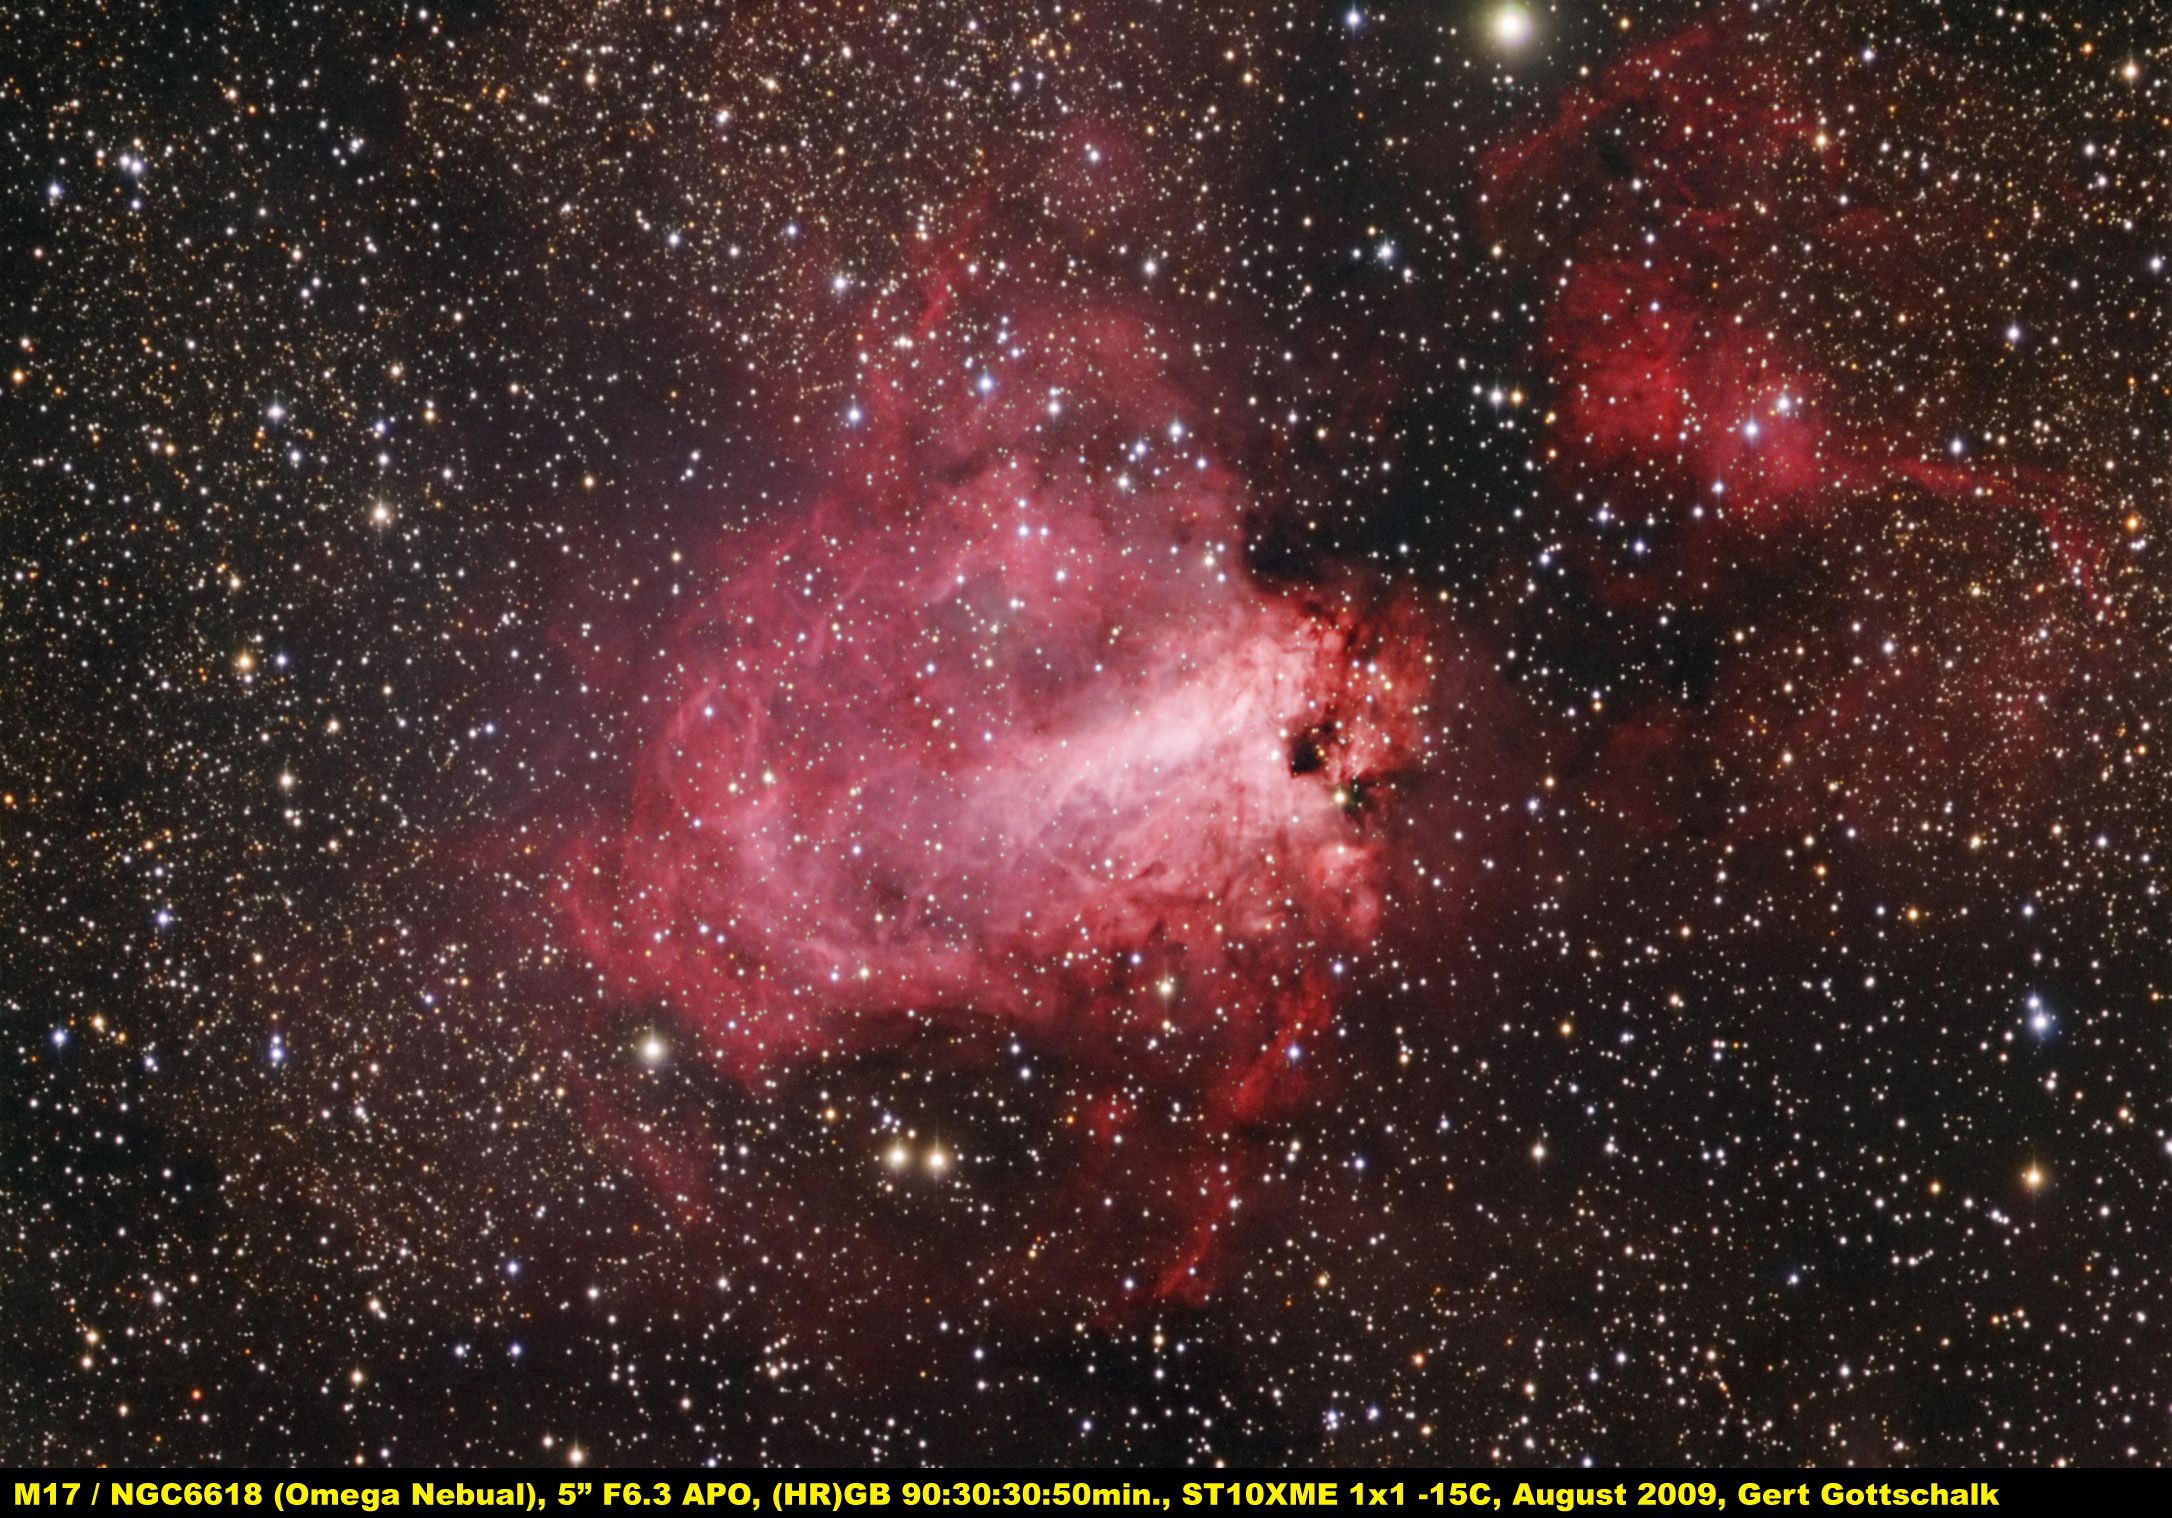 Image NGC 6618 / M17 . Omega Nebula.